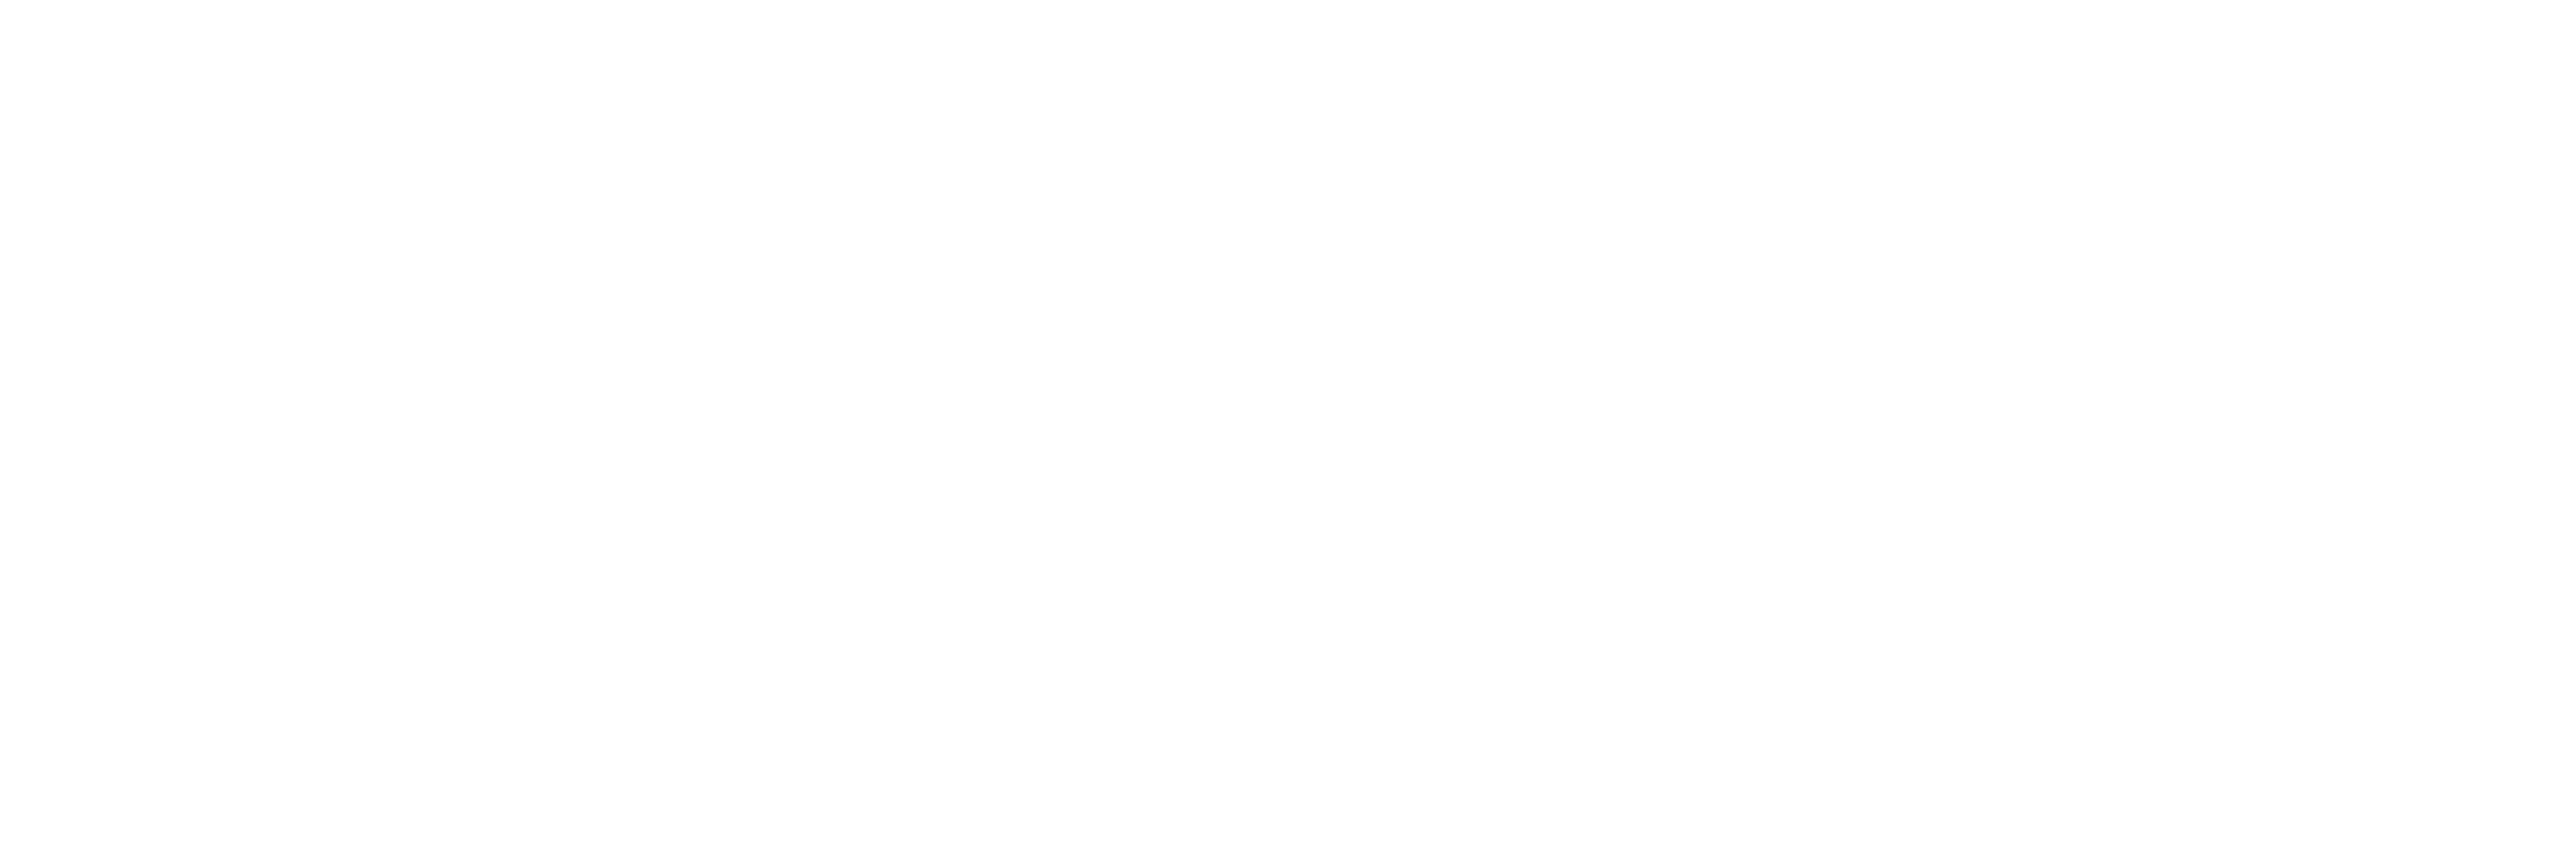 Logotipo-CocaCola-Better-Future-branca